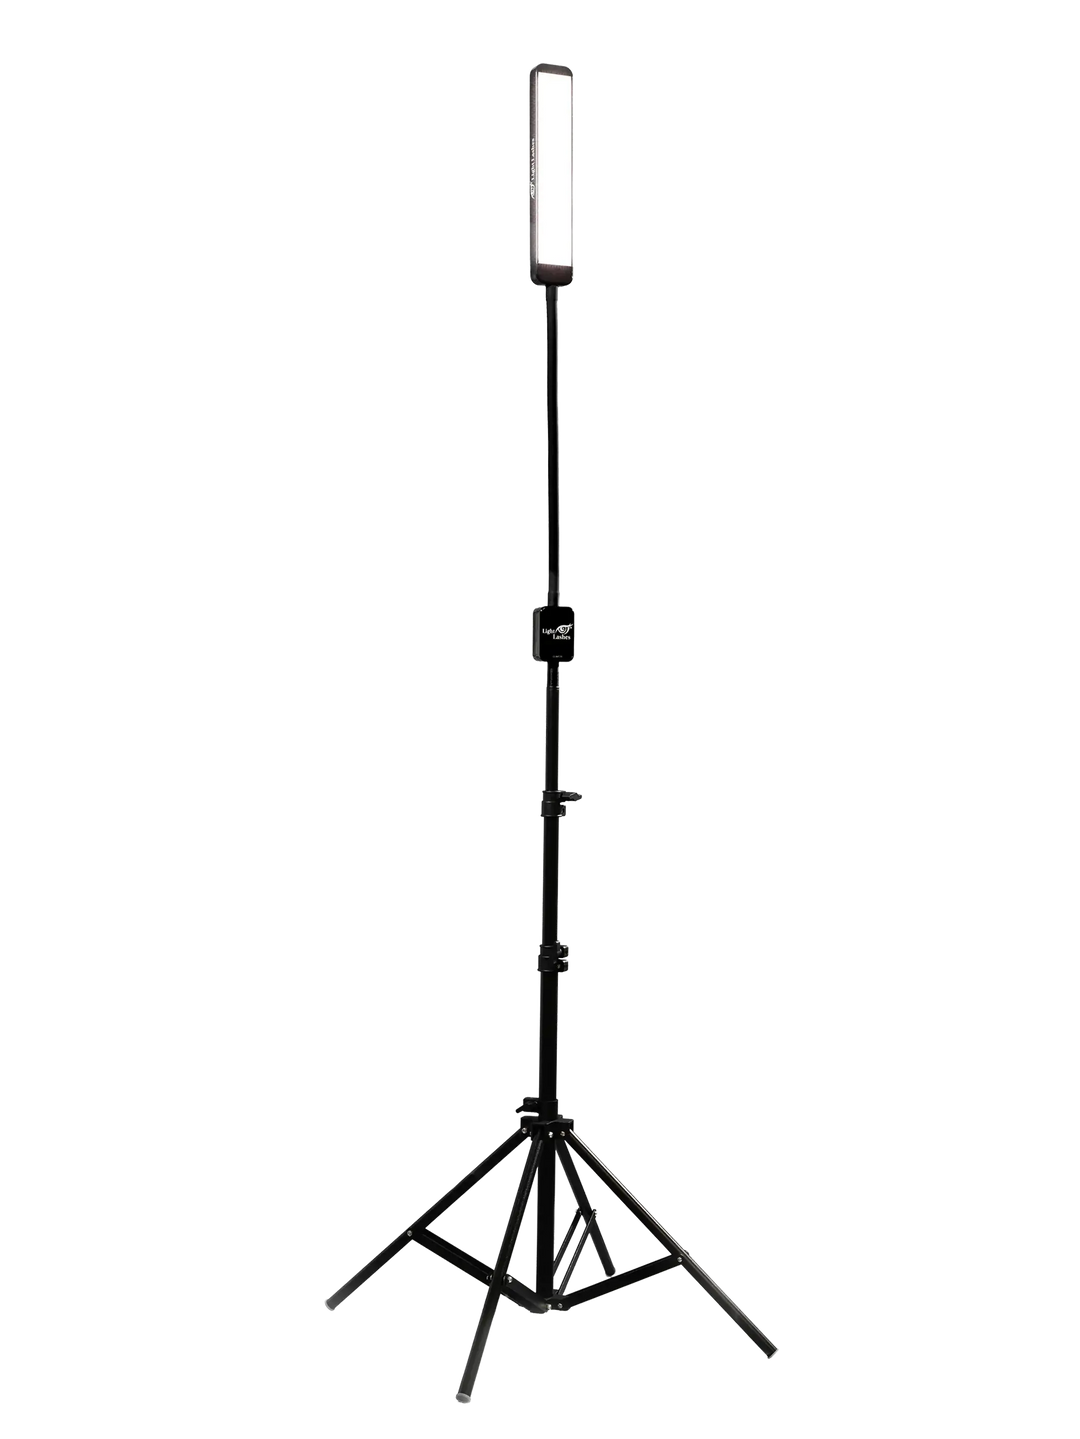 REVEAL | lampada a LED personalizzata con braccio flessibile